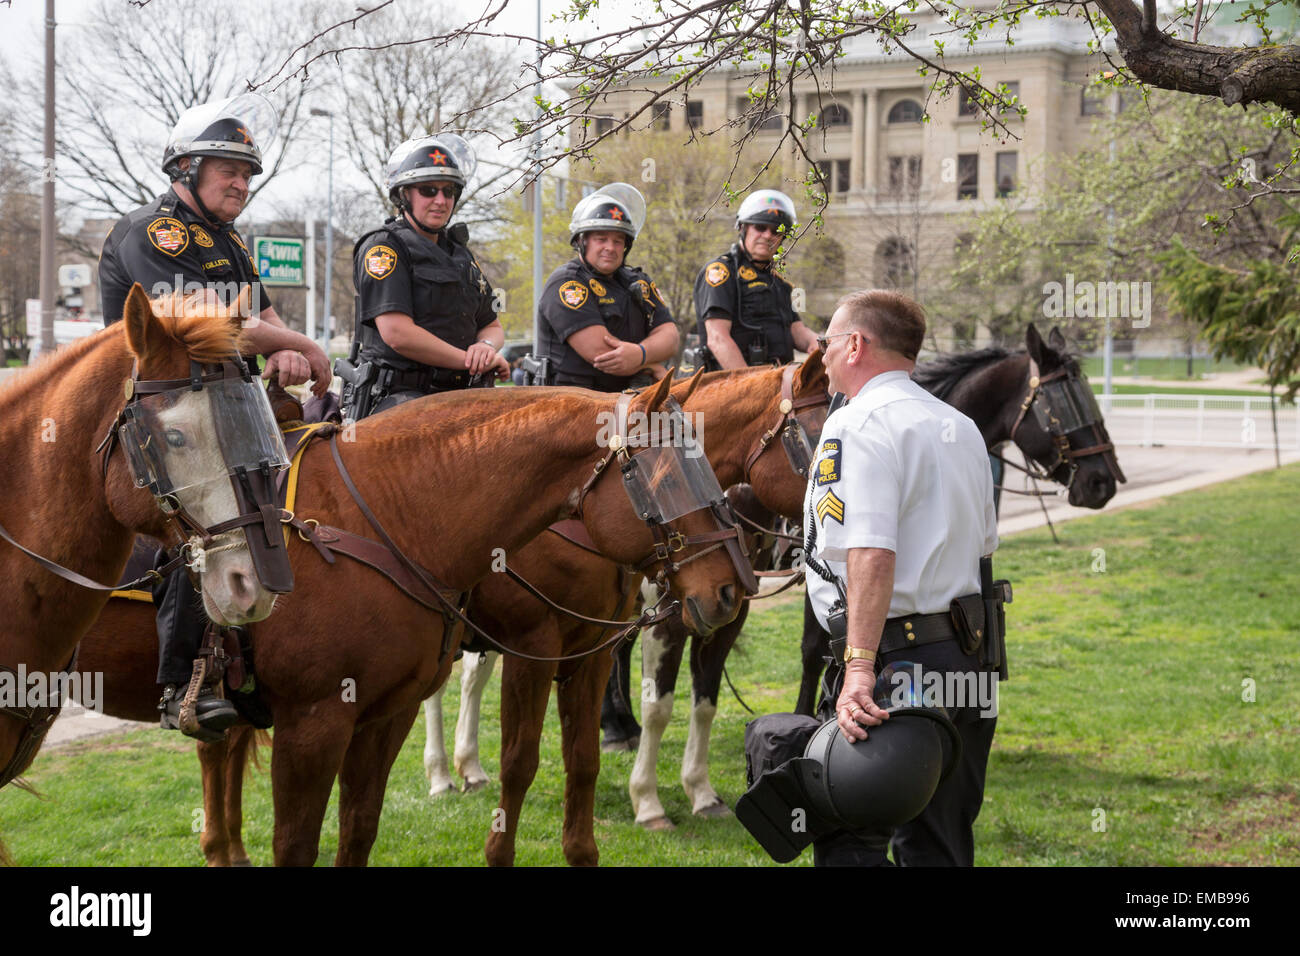 Toledo, Ohio - un sergente parla con montato il vice sceriffi, parte della forza di polizia a proteggere un raduno neonazista. Foto Stock